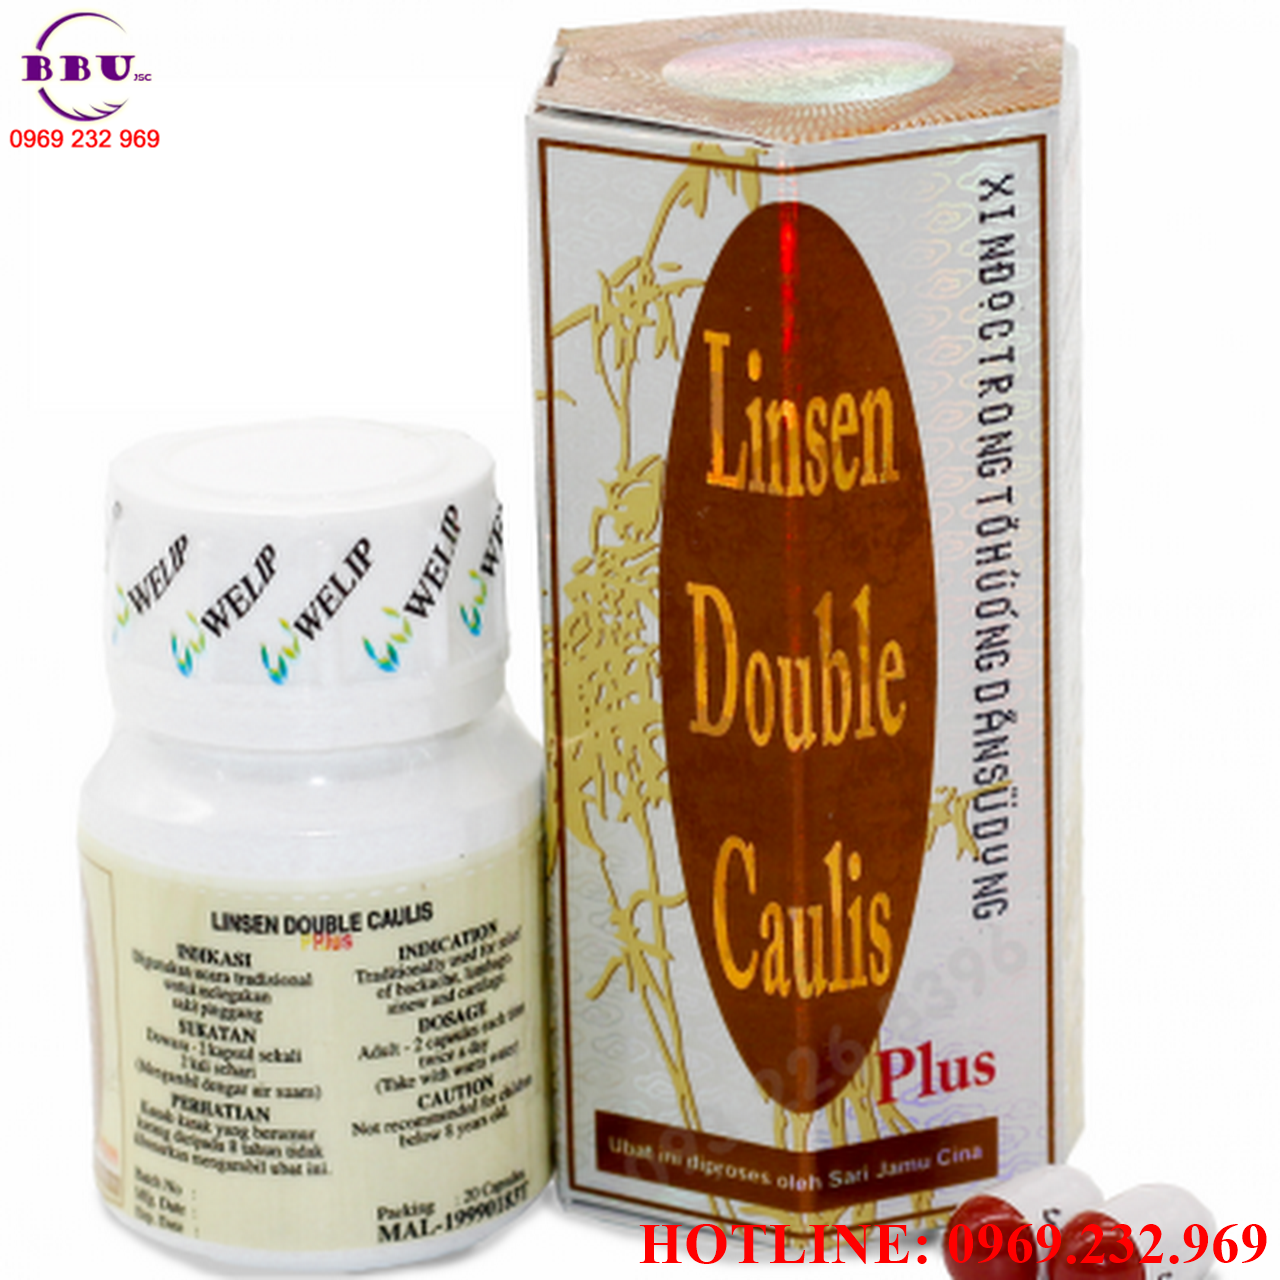 Linsen double caulis plus điều trị Gút ( Gout)